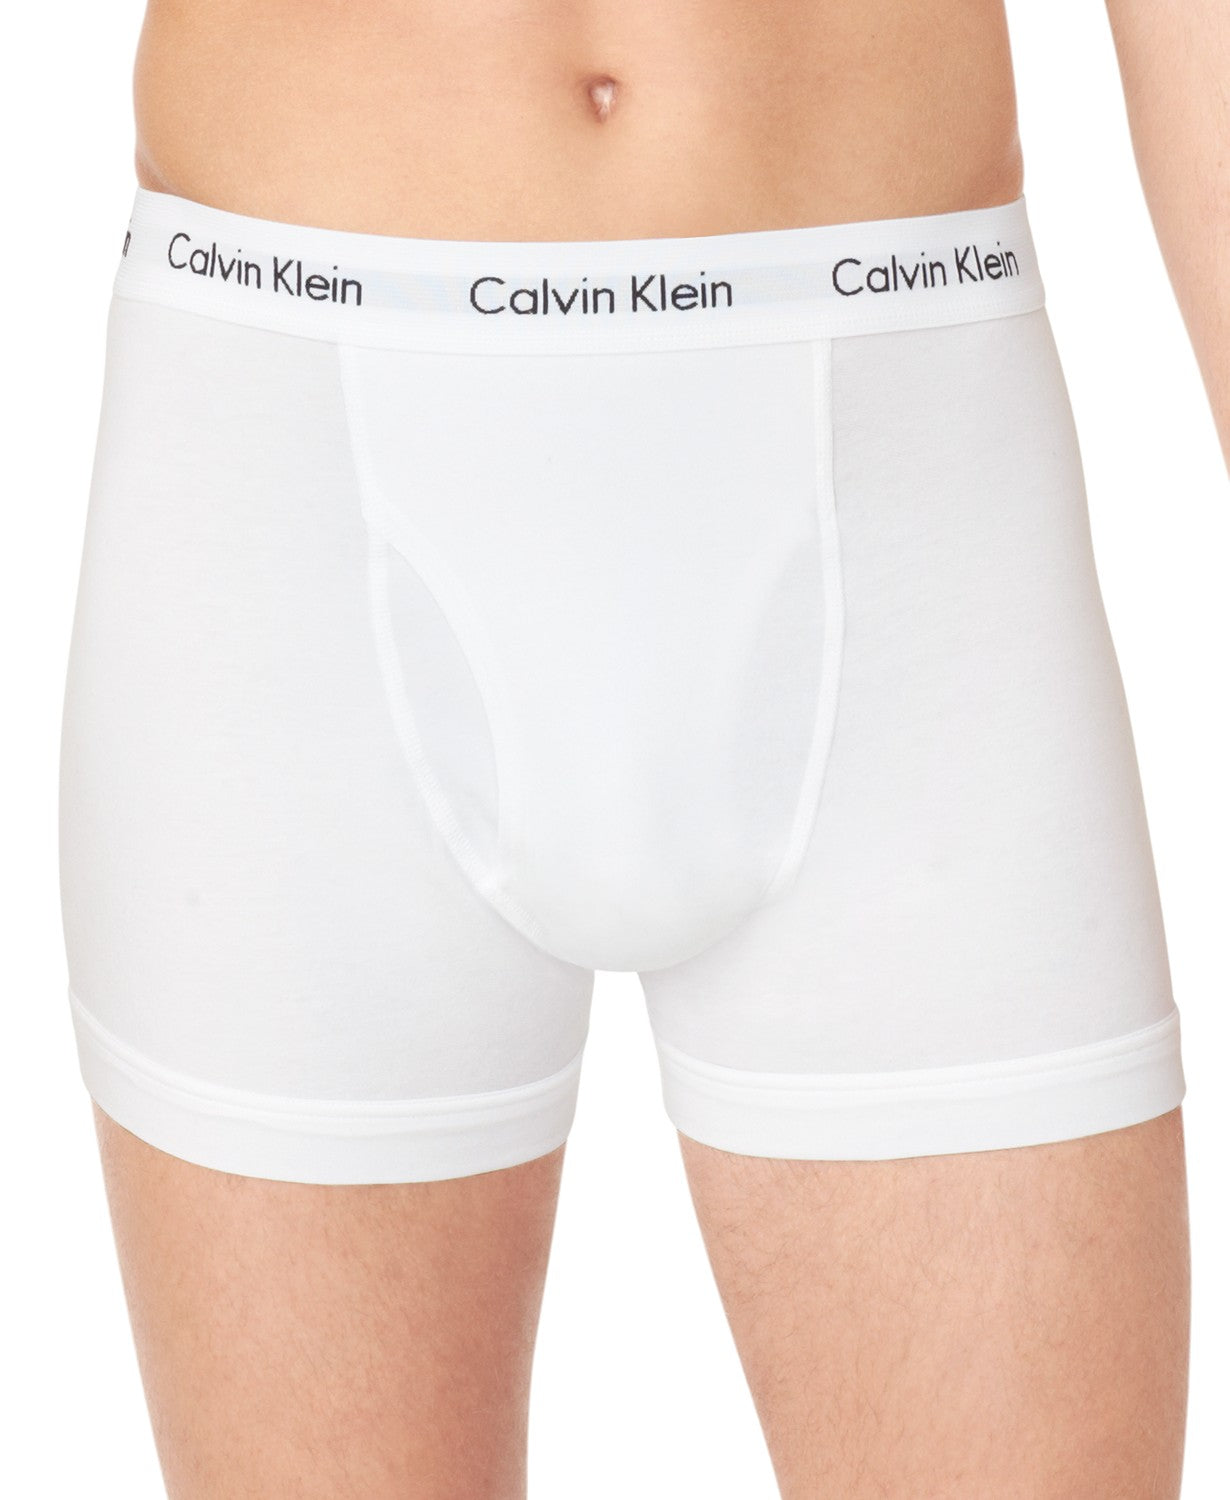 Calvin Klein Men's Cotton Trunks (Pack of 3